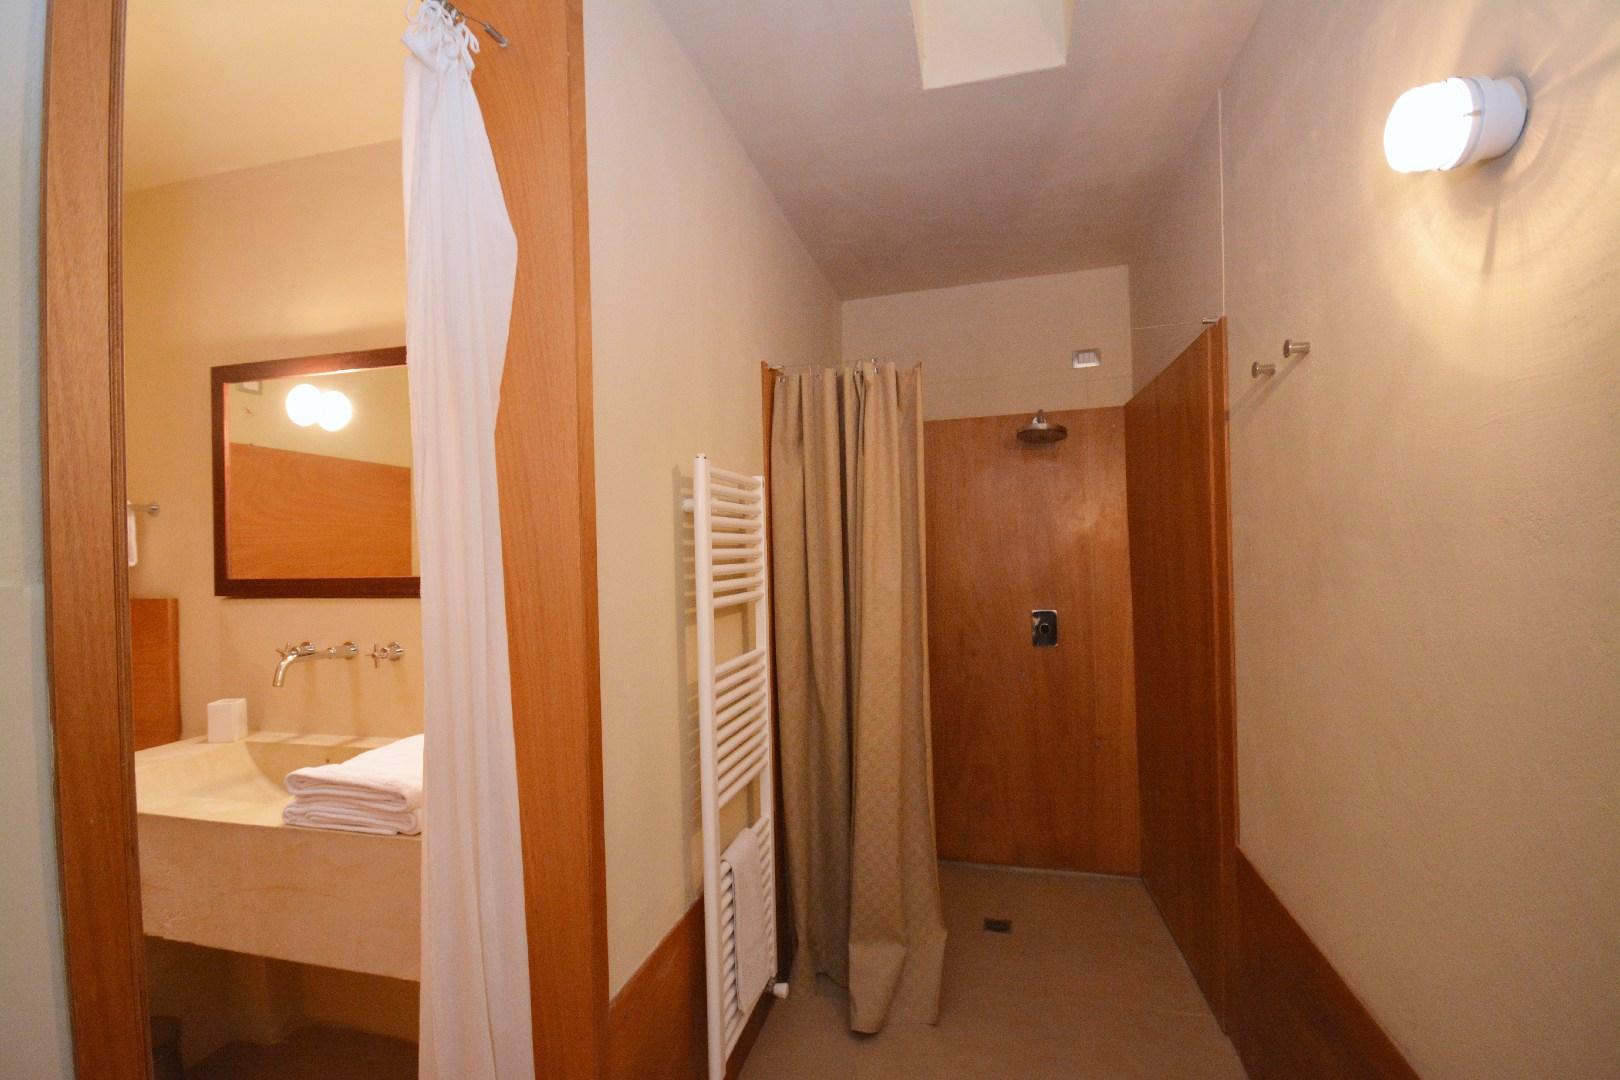 Suite Orangerie Double bedroom - bathroom